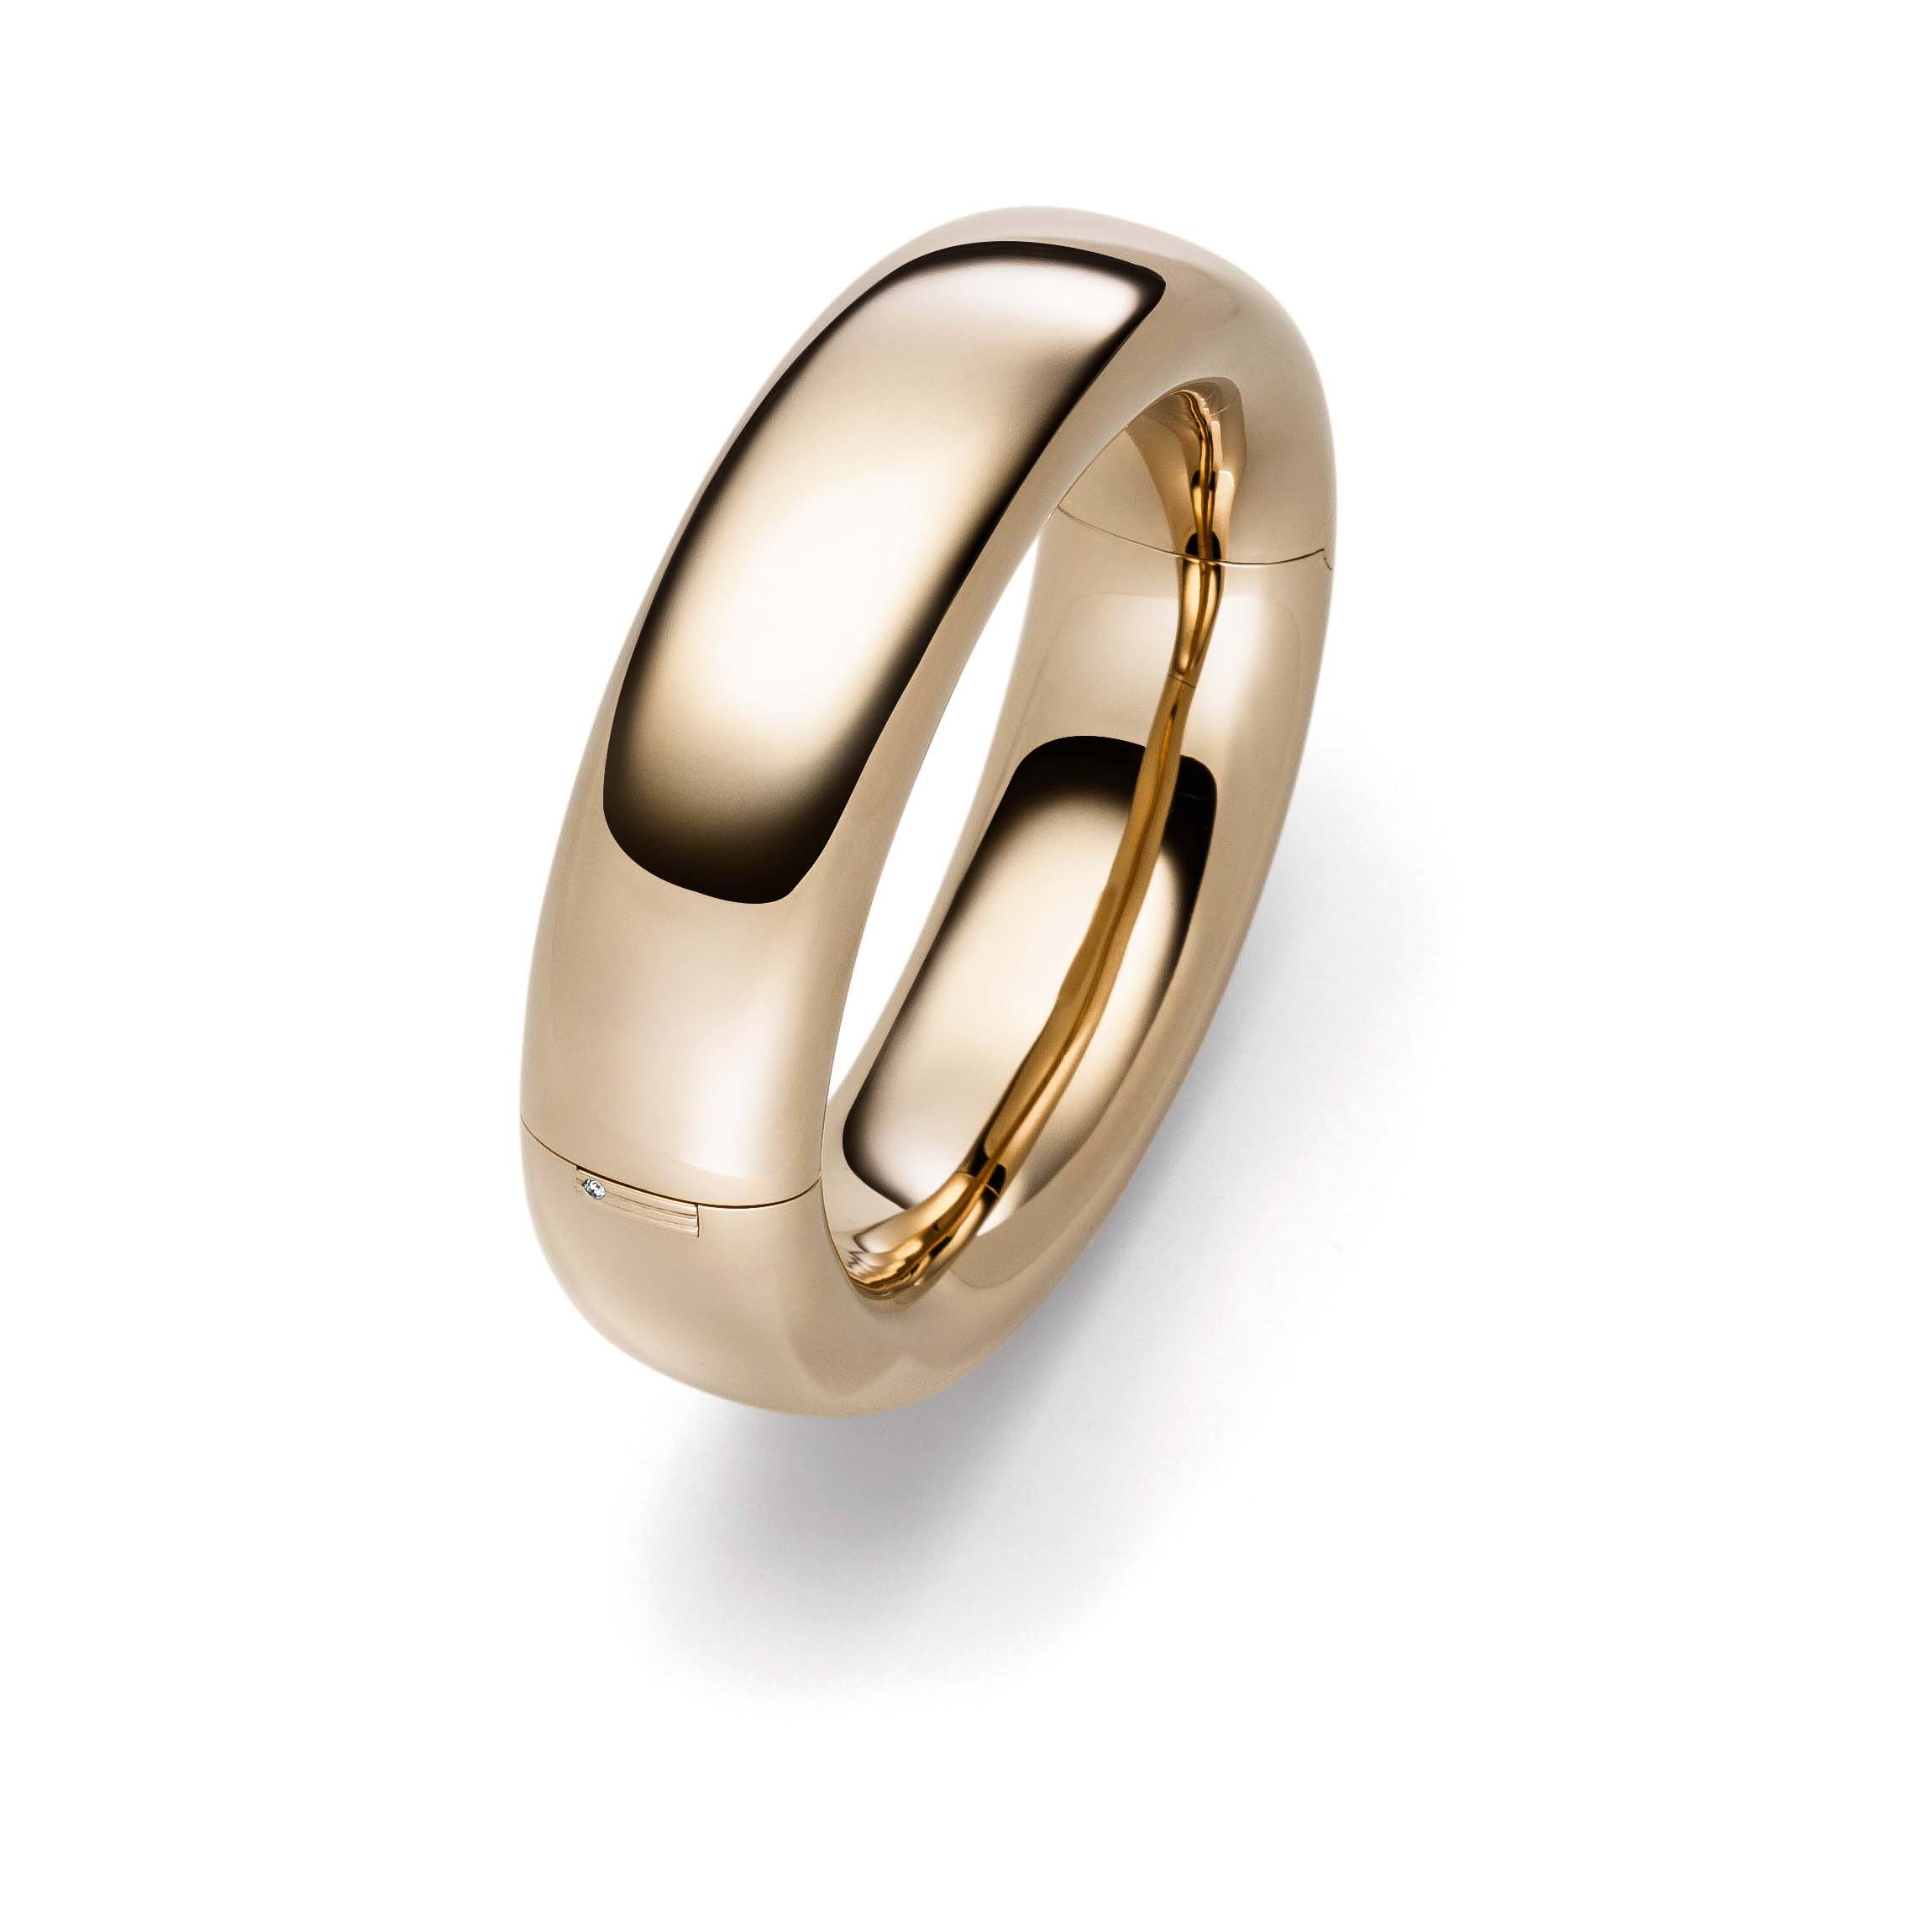 Brugerdefineret 18k gul forgyldt ring fabrik tilføje dit logo til denne type ring